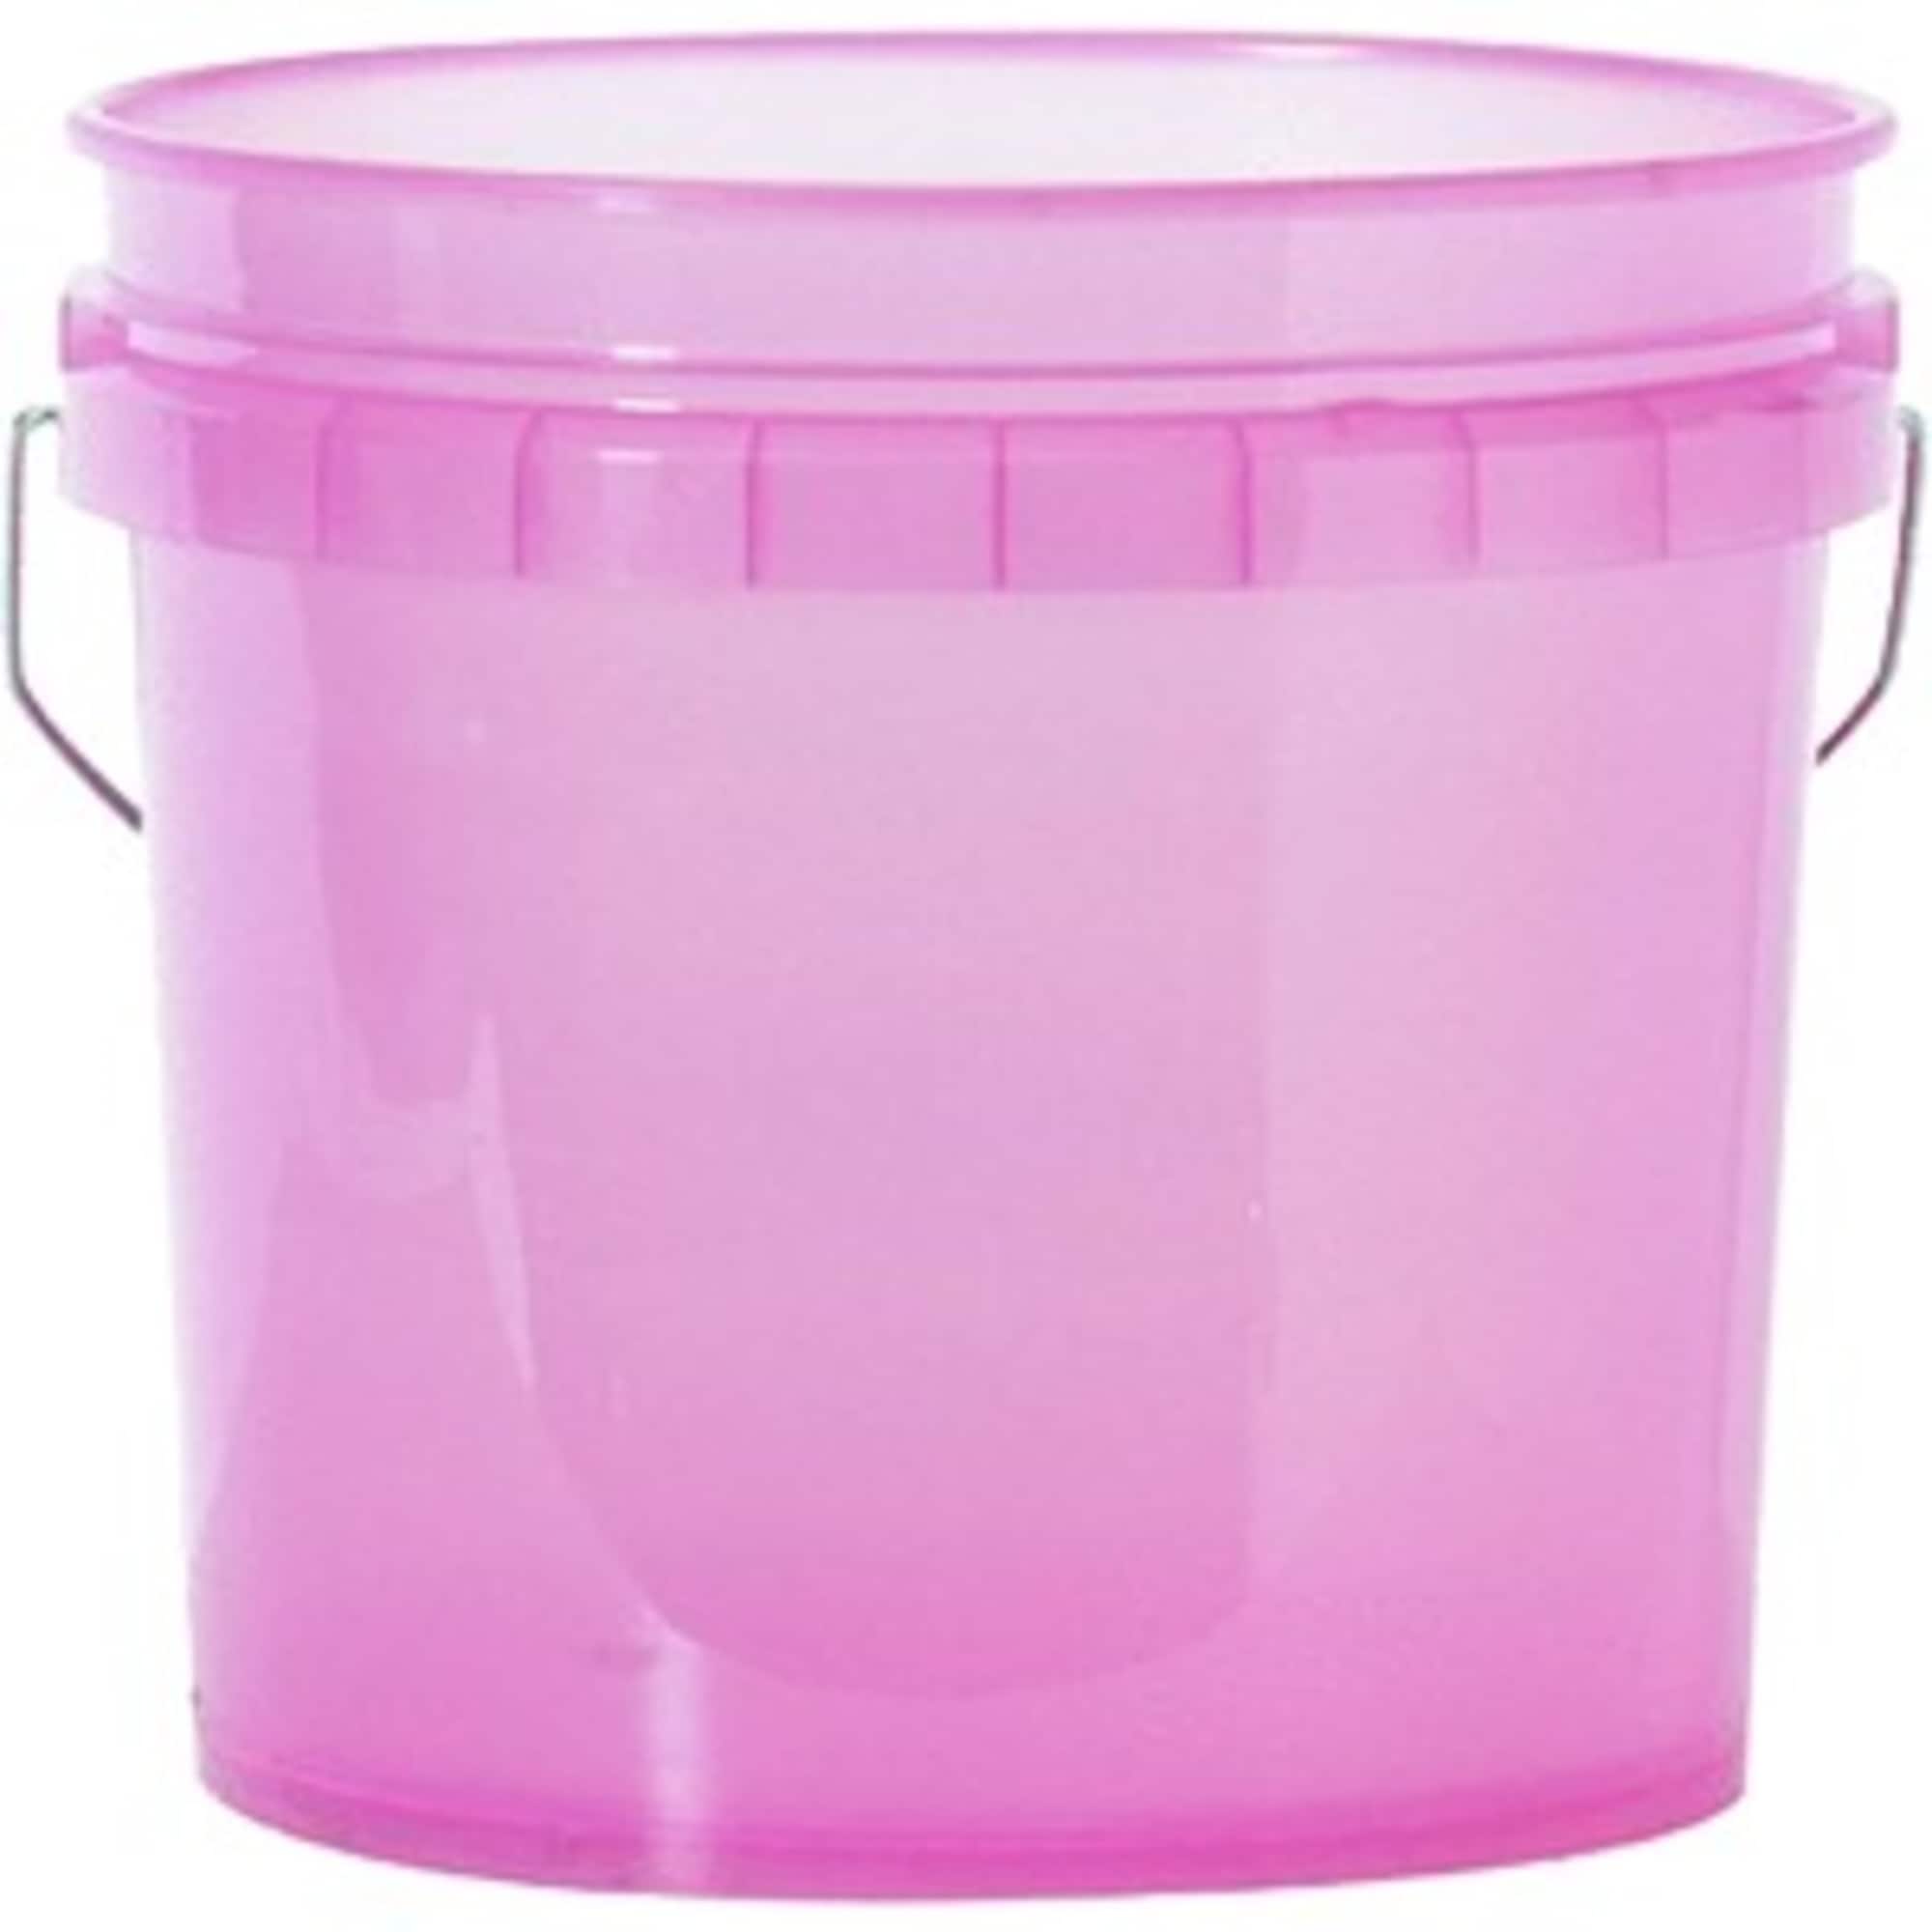 Project Source Bucket Lid Attachment Paint Can Pour Spout (Fits Bucket Size: 5-Gallon)